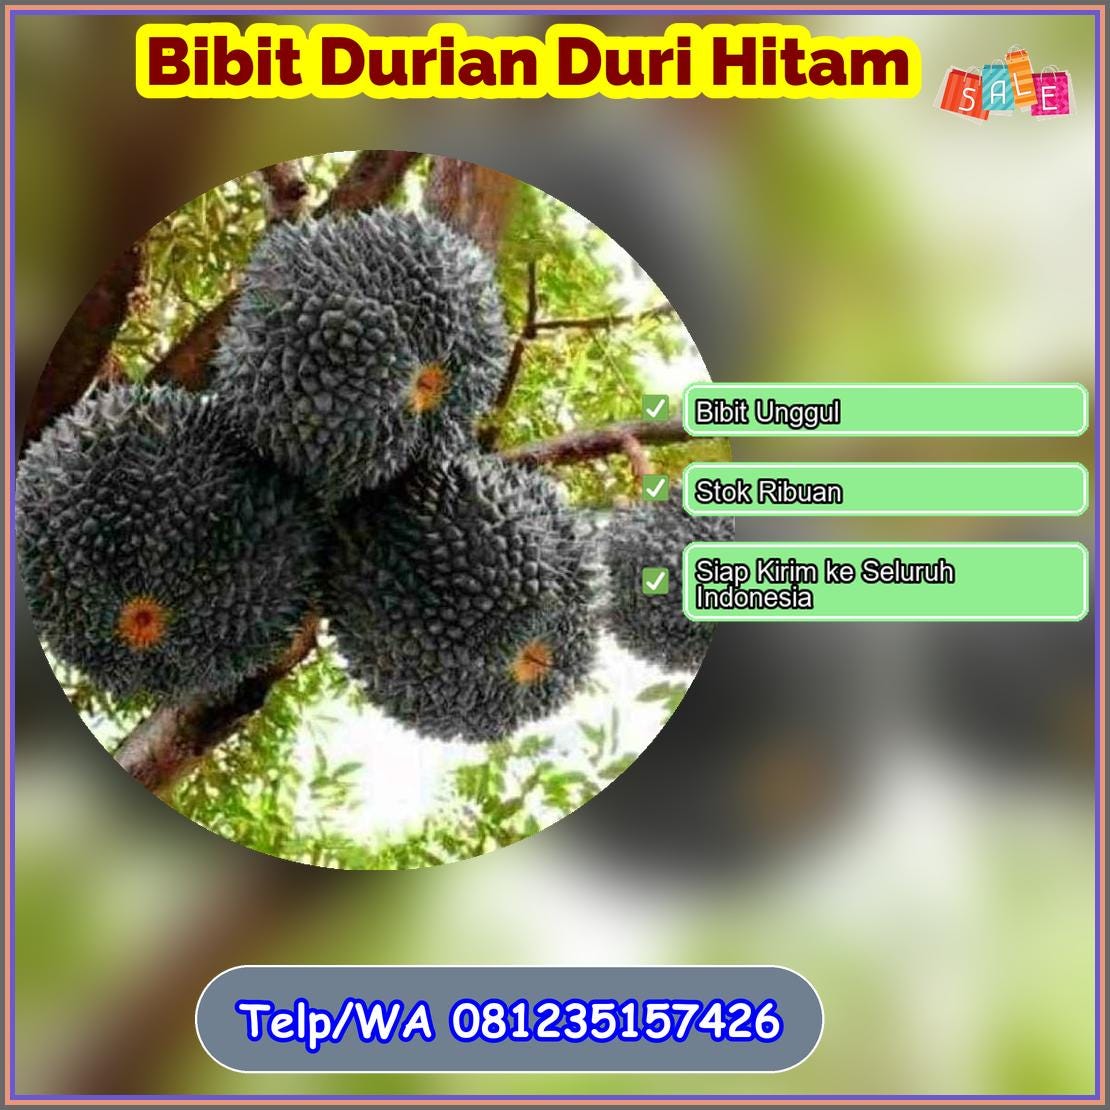 Pusat Pembibitan Bibit Durian Duri Hitam Kerinci